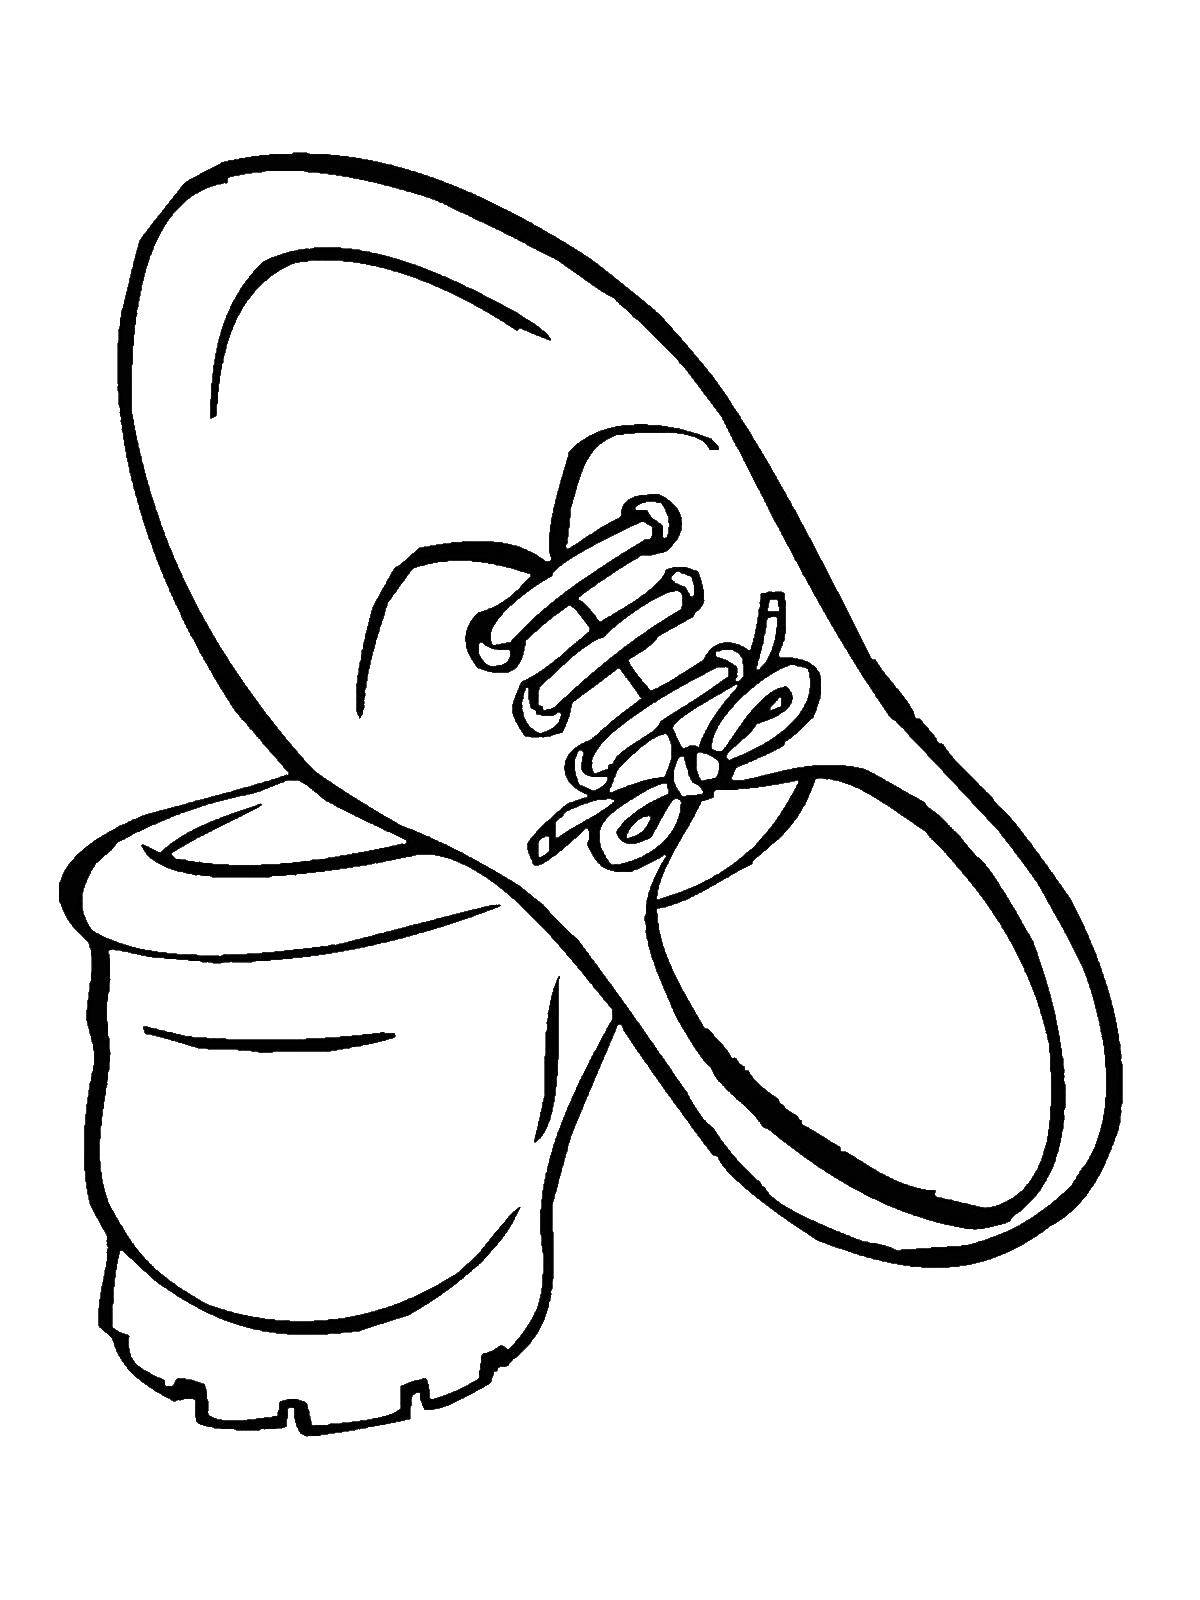 Название: Раскраска Кроссовки на шнурках. Категория: Одежда. Теги: Обувь, кроссовки, шнурки.